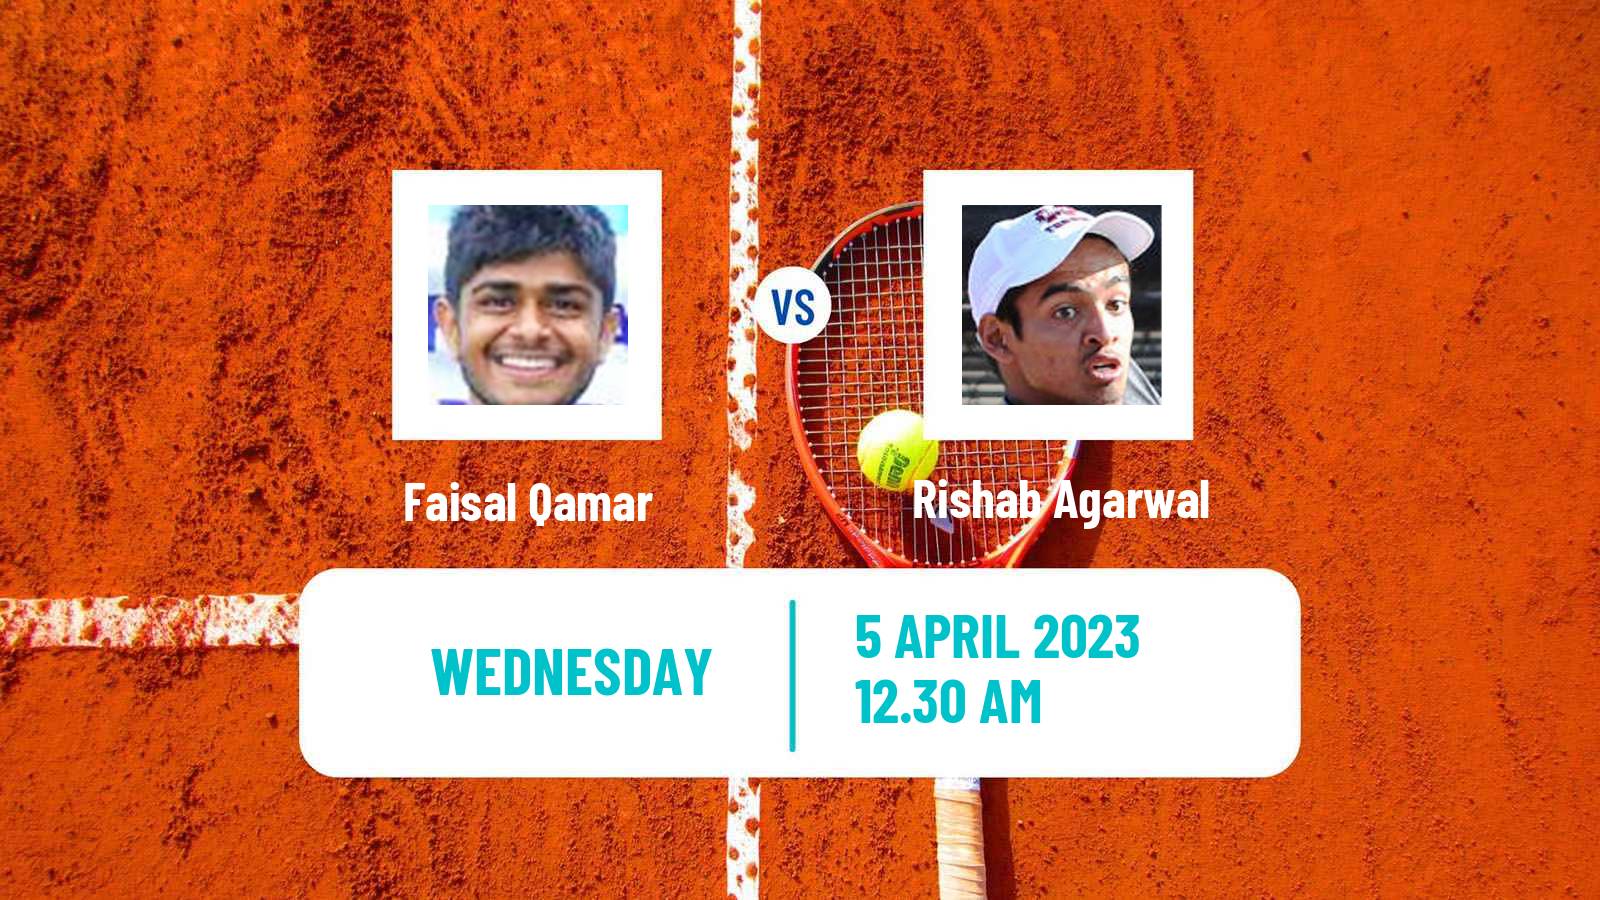 Tennis ITF Tournaments Faisal Qamar - Rishab Agarwal